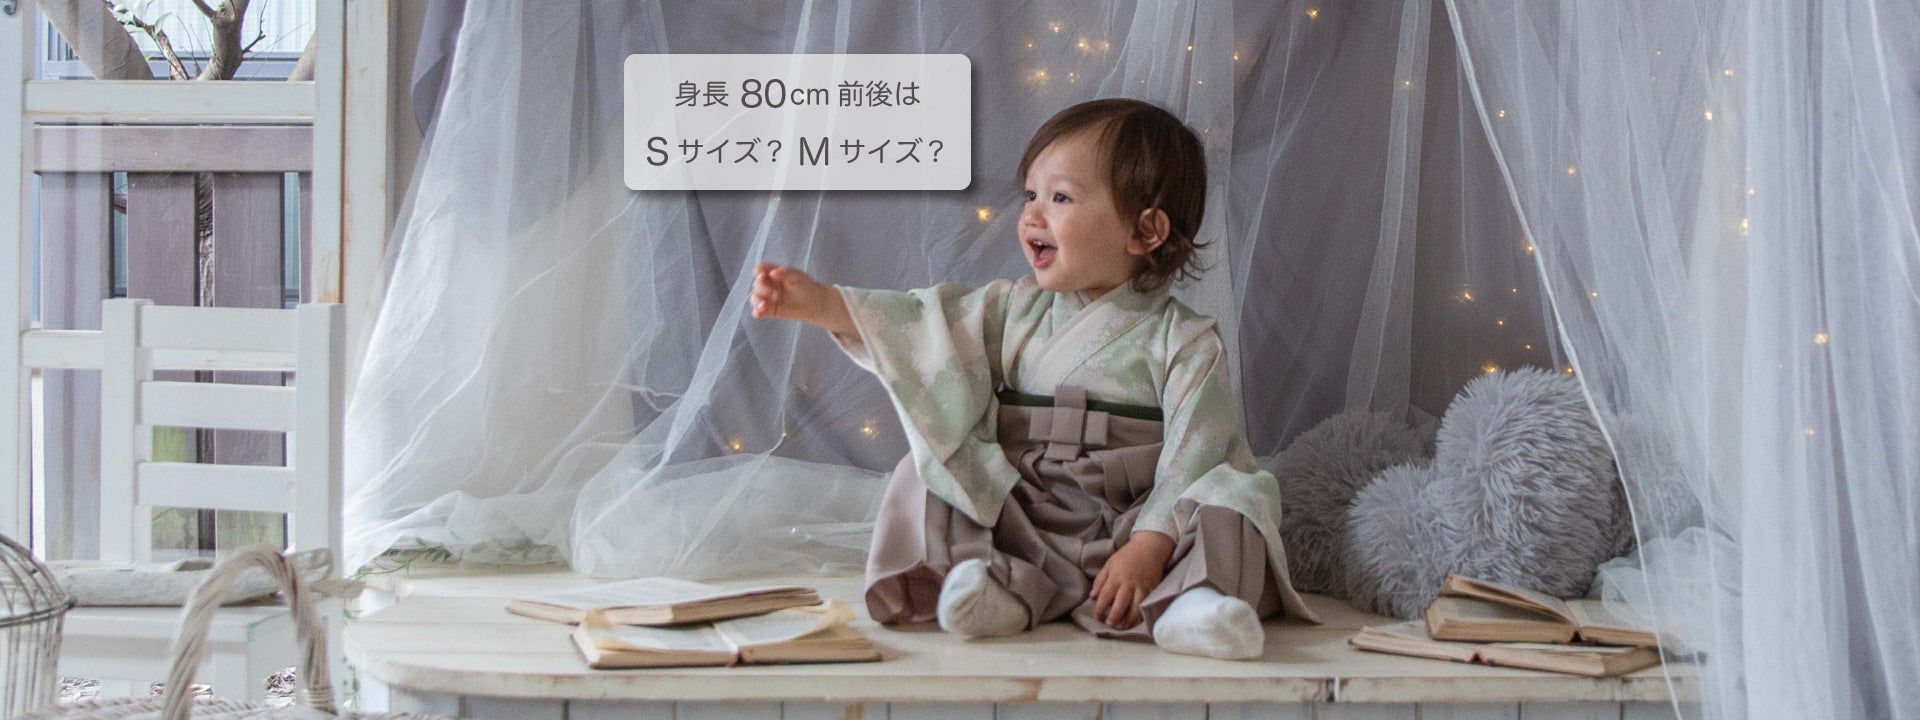 NEW安い ベビー袴 70-80cm ※最短お届けの通販 by TORIKO - ベビー袴